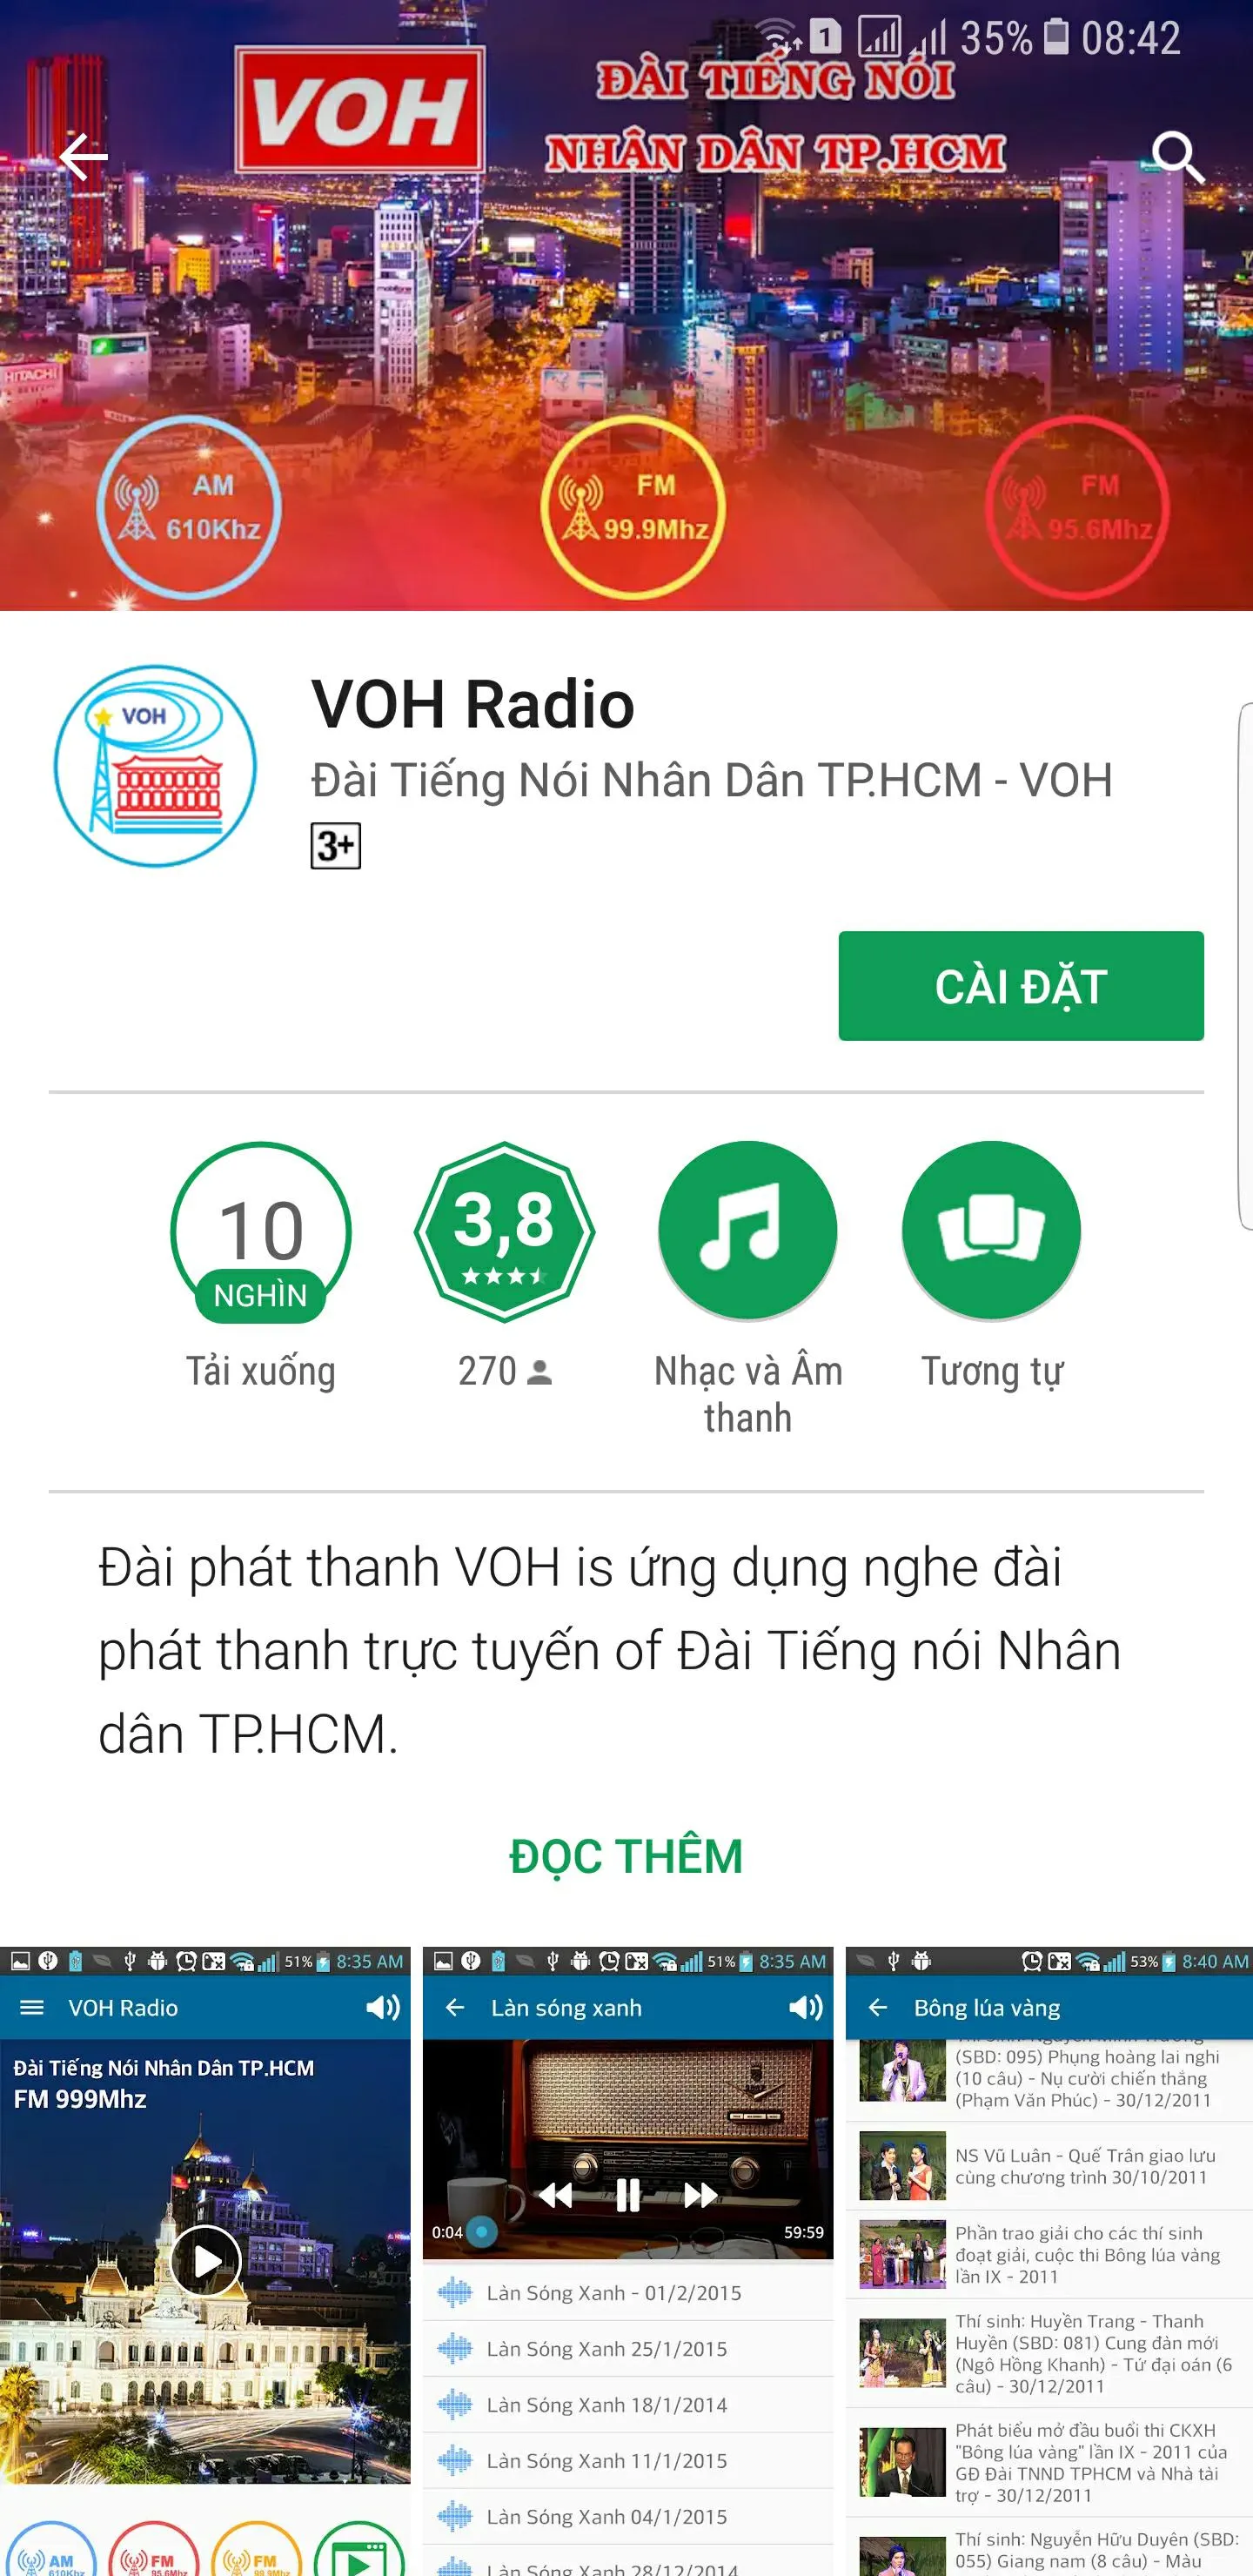 Radio VOH